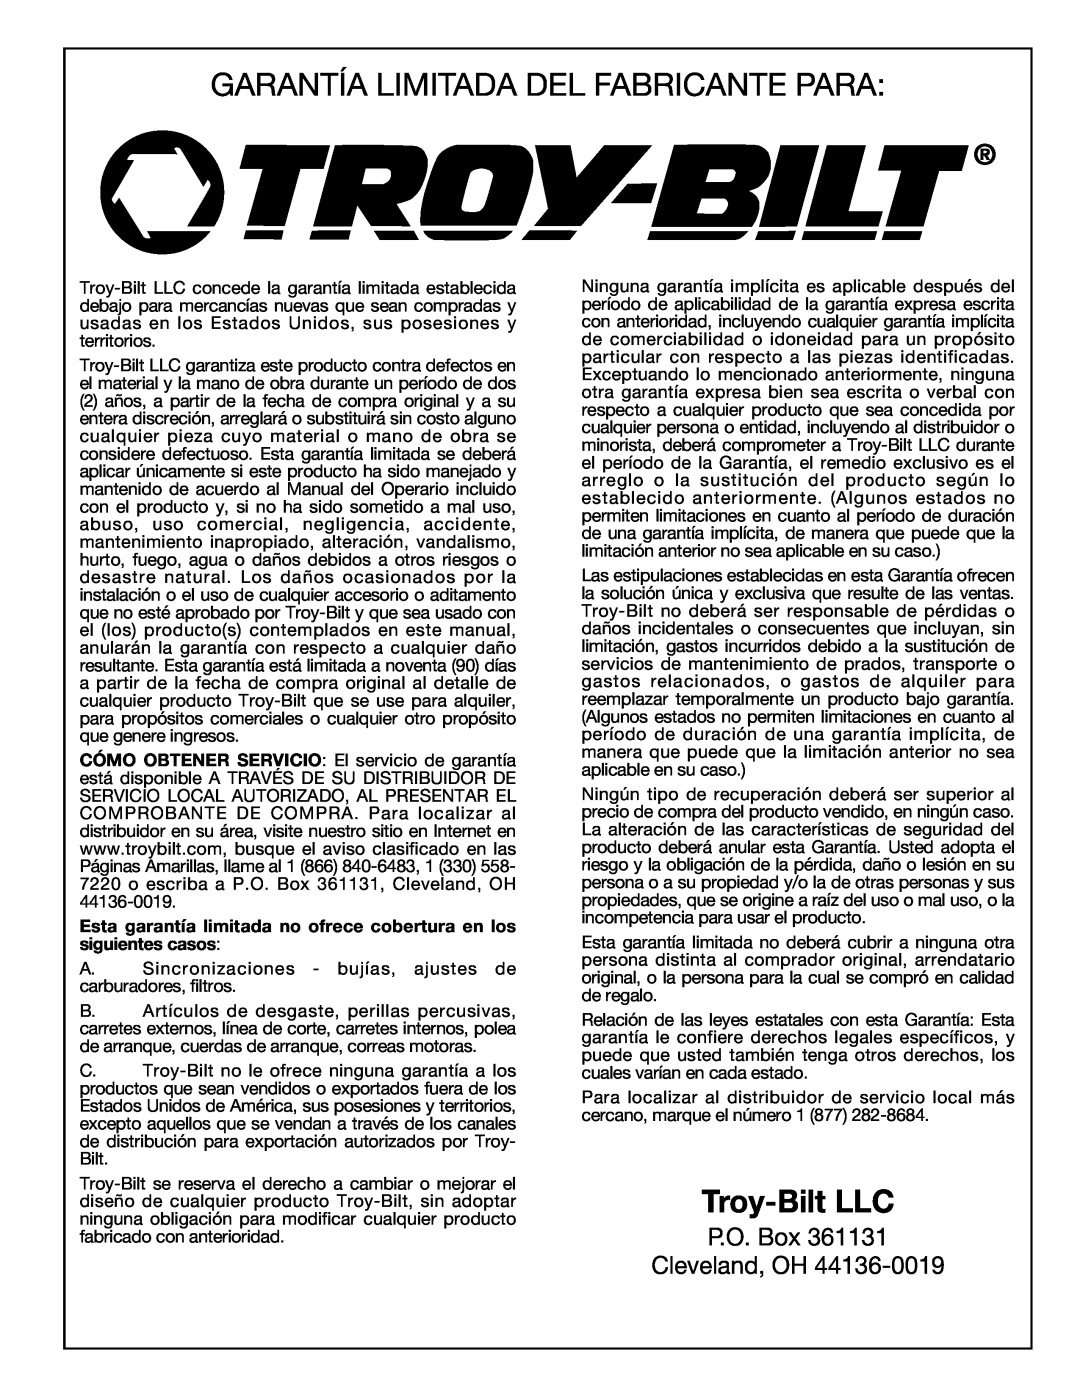 Troy-Bilt 769-00425A manual Garantía Limitada Del Fabricante Para, Troy-Bilt LLC, P.O. Box Cleveland, OH 